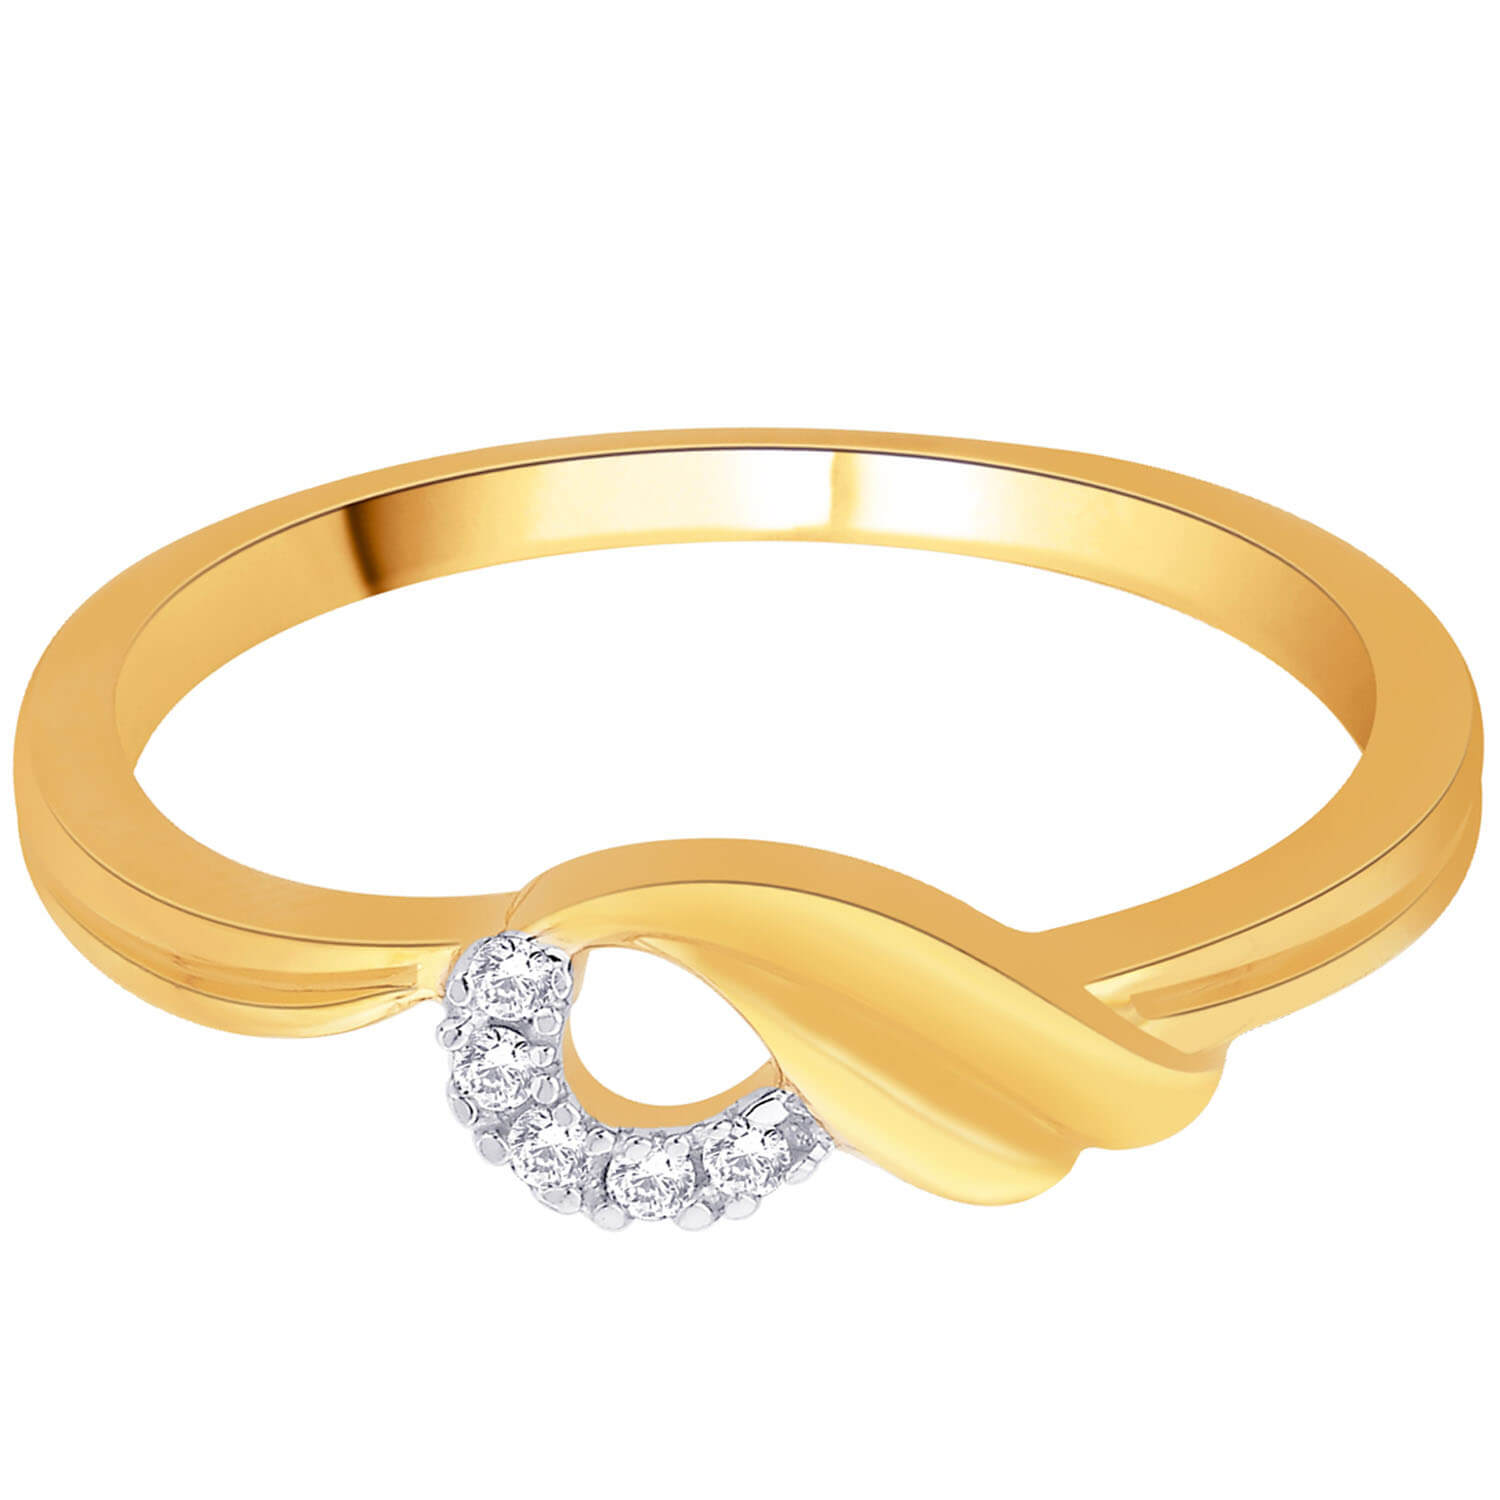 gold ring design -  wedding rings